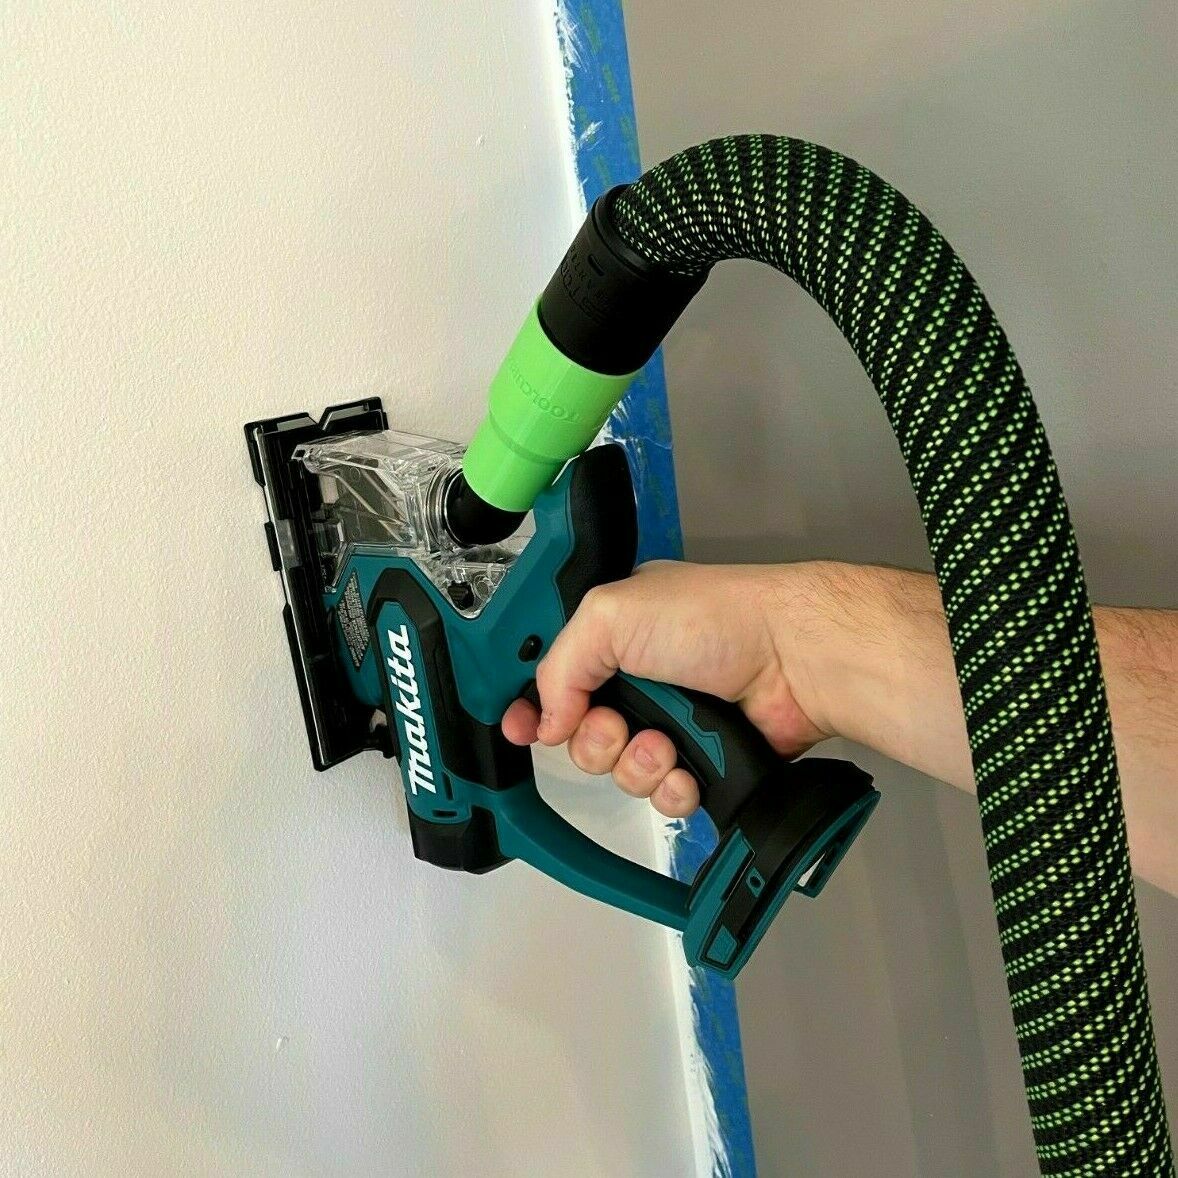 Festool midi hose to makita sander vacuum cleaner adapter 